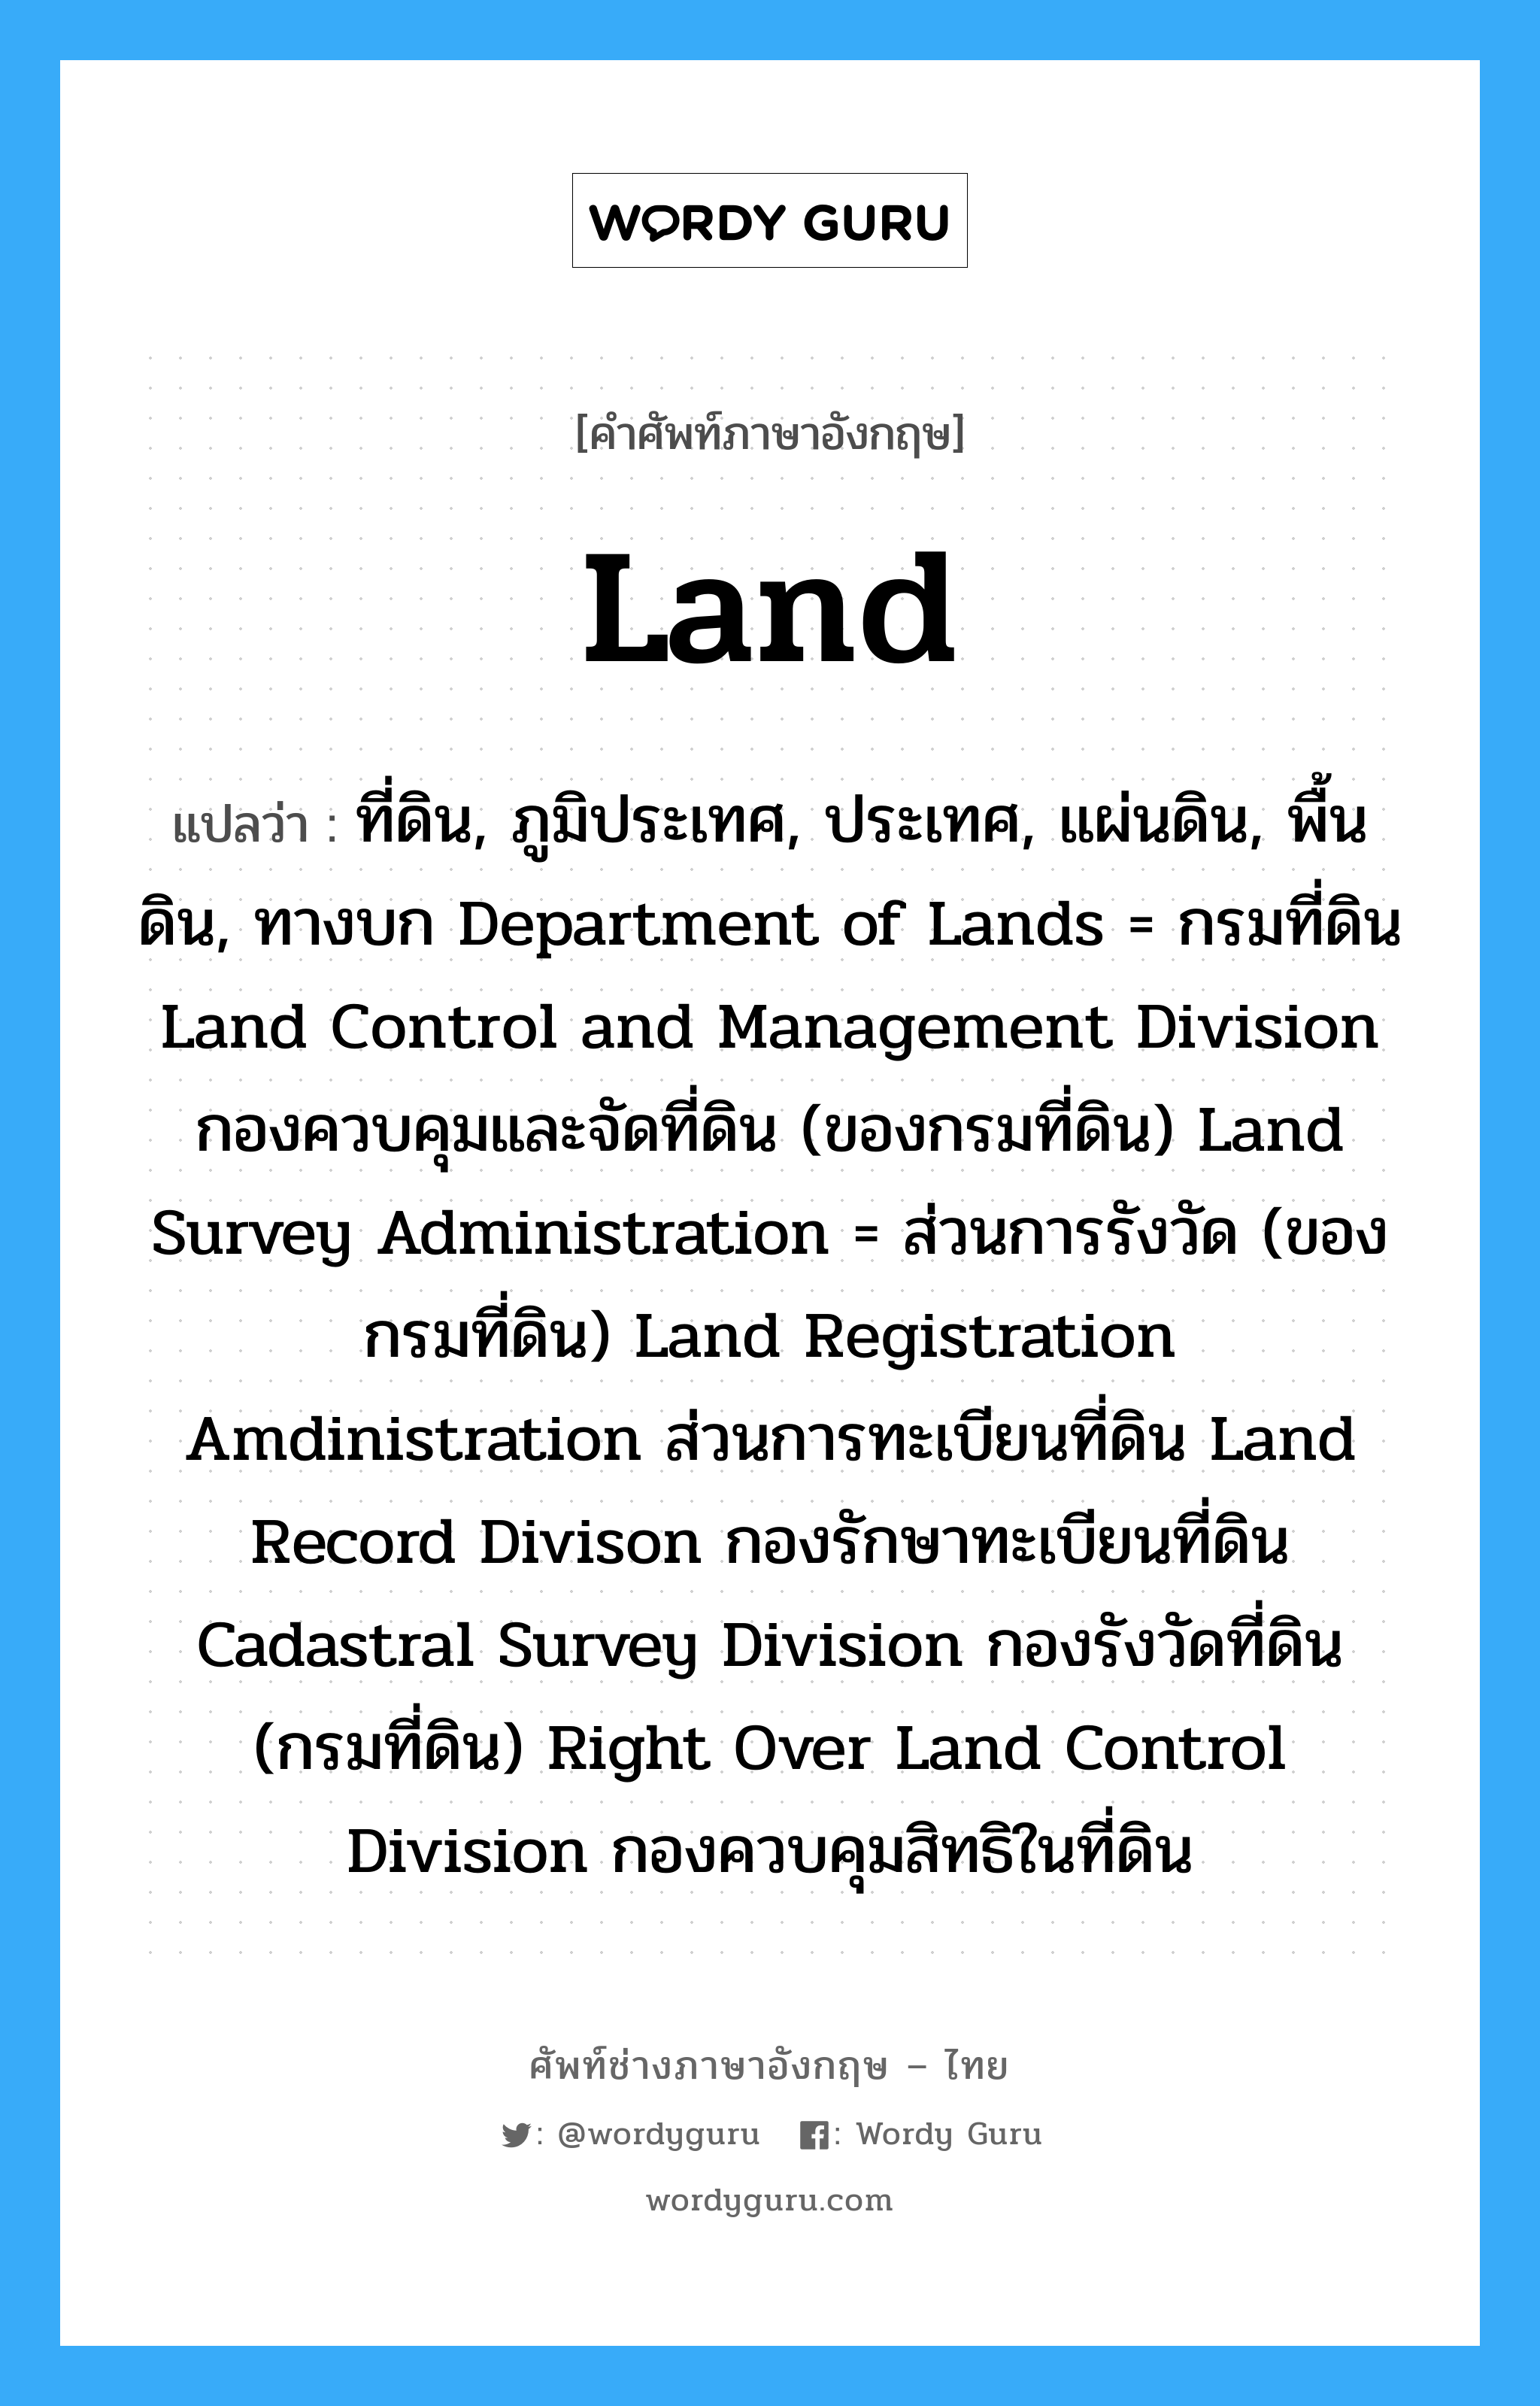 ที่ดิน, ภูมิประเทศ, ประเทศ, แผ่นดิน, พื้นดิน, ทางบก Department of Lands = กรมที่ดิน Land Control and Management Division กองควบคุมและจัดที่ดิน (ของกรมที่ดิน) Land Survey Administration = ส่วนการรังวัด (ของกรมที่ดิน) Land Registration Amdinistration ส่วนการทะเบียนที่ดิน Land Record Divison กองรักษาทะเบียนที่ดิน Cadastral Survey Division กองรังวัดที่ดิน (กรมที่ดิน) Right Over Land Control Division กองควบคุมสิทธิในที่ดิน ภาษาอังกฤษ?, คำศัพท์ช่างภาษาอังกฤษ - ไทย ที่ดิน, ภูมิประเทศ, ประเทศ, แผ่นดิน, พื้นดิน, ทางบก Department of Lands = กรมที่ดิน Land Control and Management Division กองควบคุมและจัดที่ดิน (ของกรมที่ดิน) Land Survey Administration = ส่วนการรังวัด (ของกรมที่ดิน) Land Registration Amdinistration ส่วนการทะเบียนที่ดิน Land Record Divison กองรักษาทะเบียนที่ดิน Cadastral Survey Division กองรังวัดที่ดิน (กรมที่ดิน) Right Over Land Control Division กองควบคุมสิทธิในที่ดิน คำศัพท์ภาษาอังกฤษ ที่ดิน, ภูมิประเทศ, ประเทศ, แผ่นดิน, พื้นดิน, ทางบก Department of Lands = กรมที่ดิน Land Control and Management Division กองควบคุมและจัดที่ดิน (ของกรมที่ดิน) Land Survey Administration = ส่วนการรังวัด (ของกรมที่ดิน) Land Registration Amdinistration ส่วนการทะเบียนที่ดิน Land Record Divison กองรักษาทะเบียนที่ดิน Cadastral Survey Division กองรังวัดที่ดิน (กรมที่ดิน) Right Over Land Control Division กองควบคุมสิทธิในที่ดิน แปลว่า land